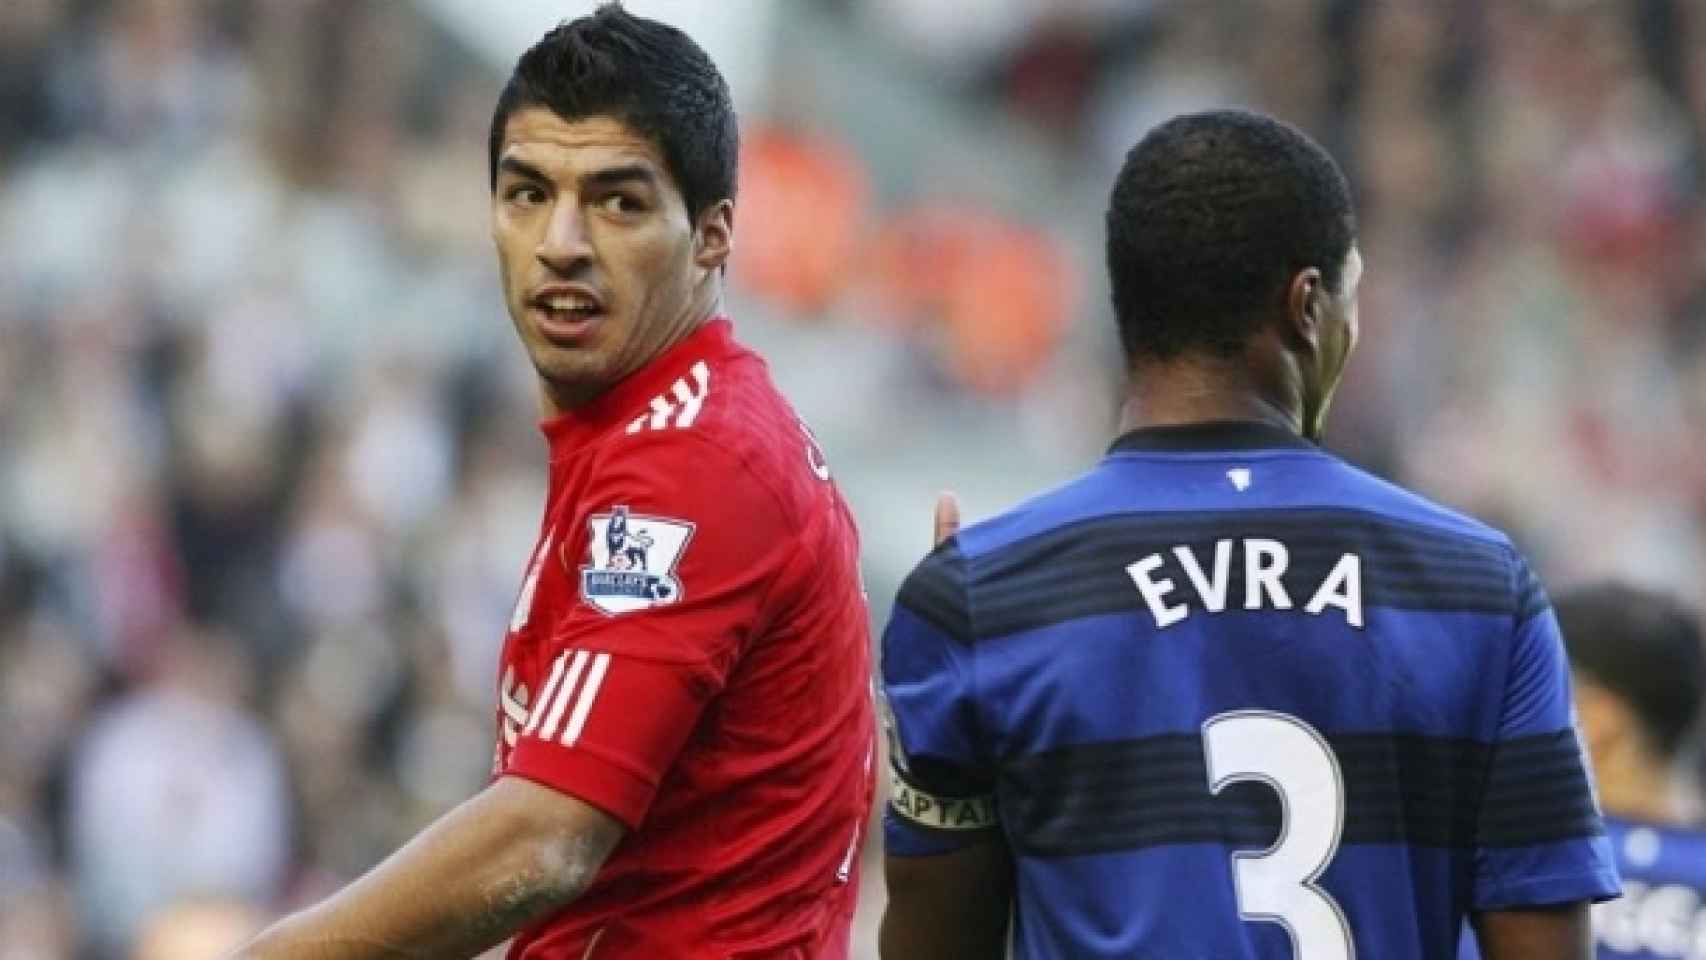 El Liverpool pide perdón a Evra nueve años después por el ataque racista de Luis Suárez